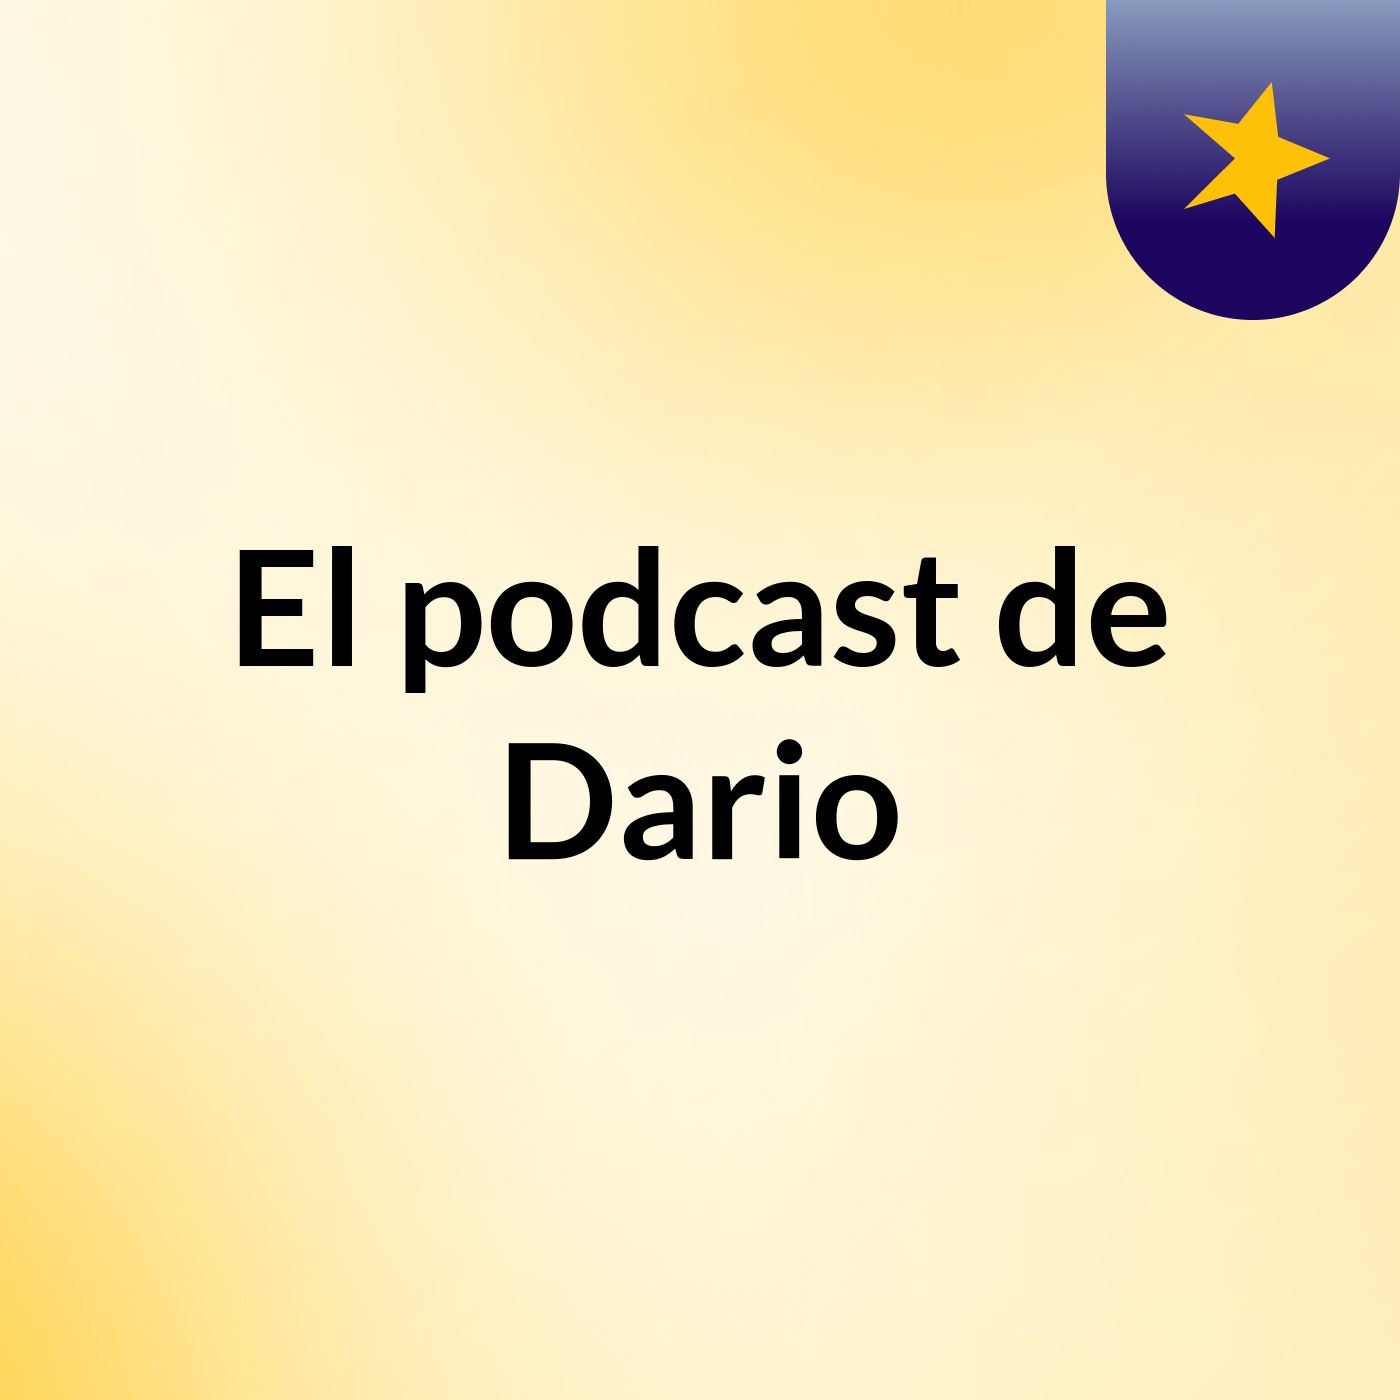 Episodio 11 - El podcast de Dario